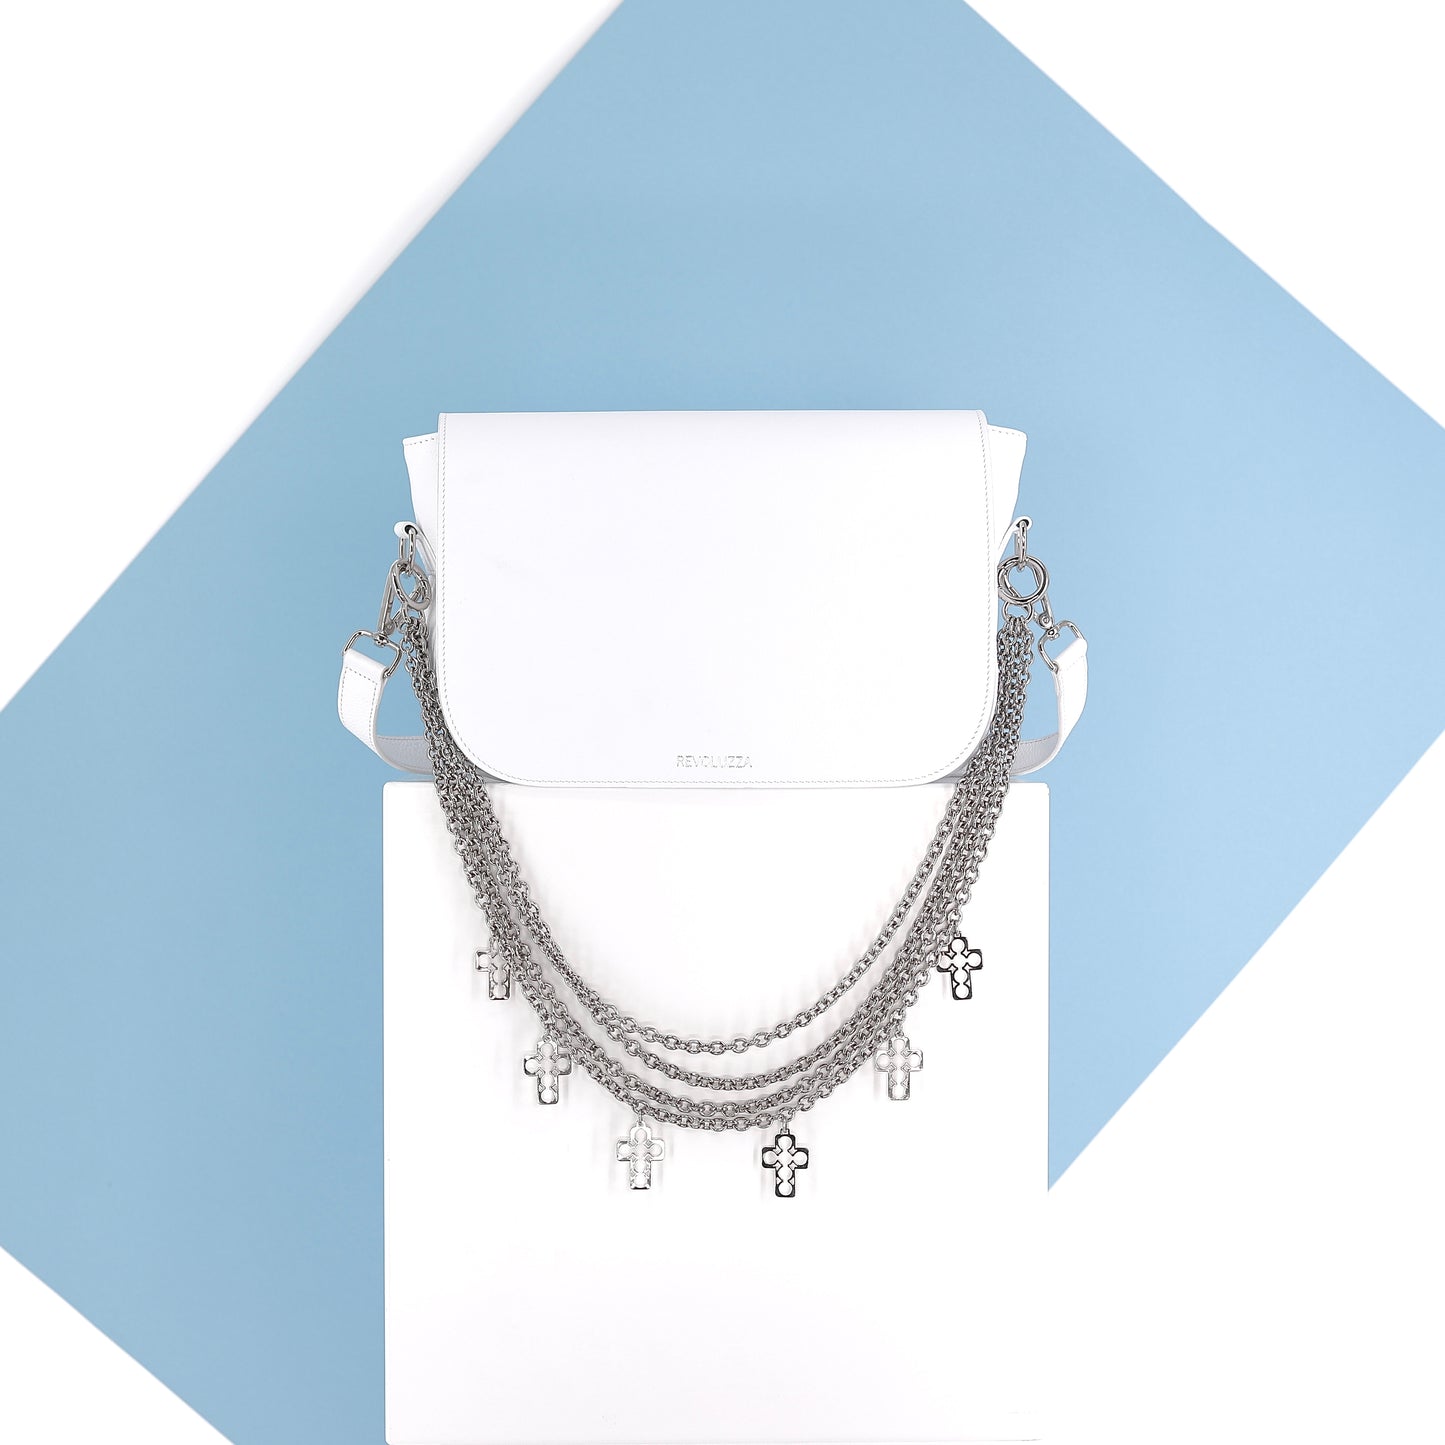 EMILIA Handtasche aus echtem Leder in weiß, medium